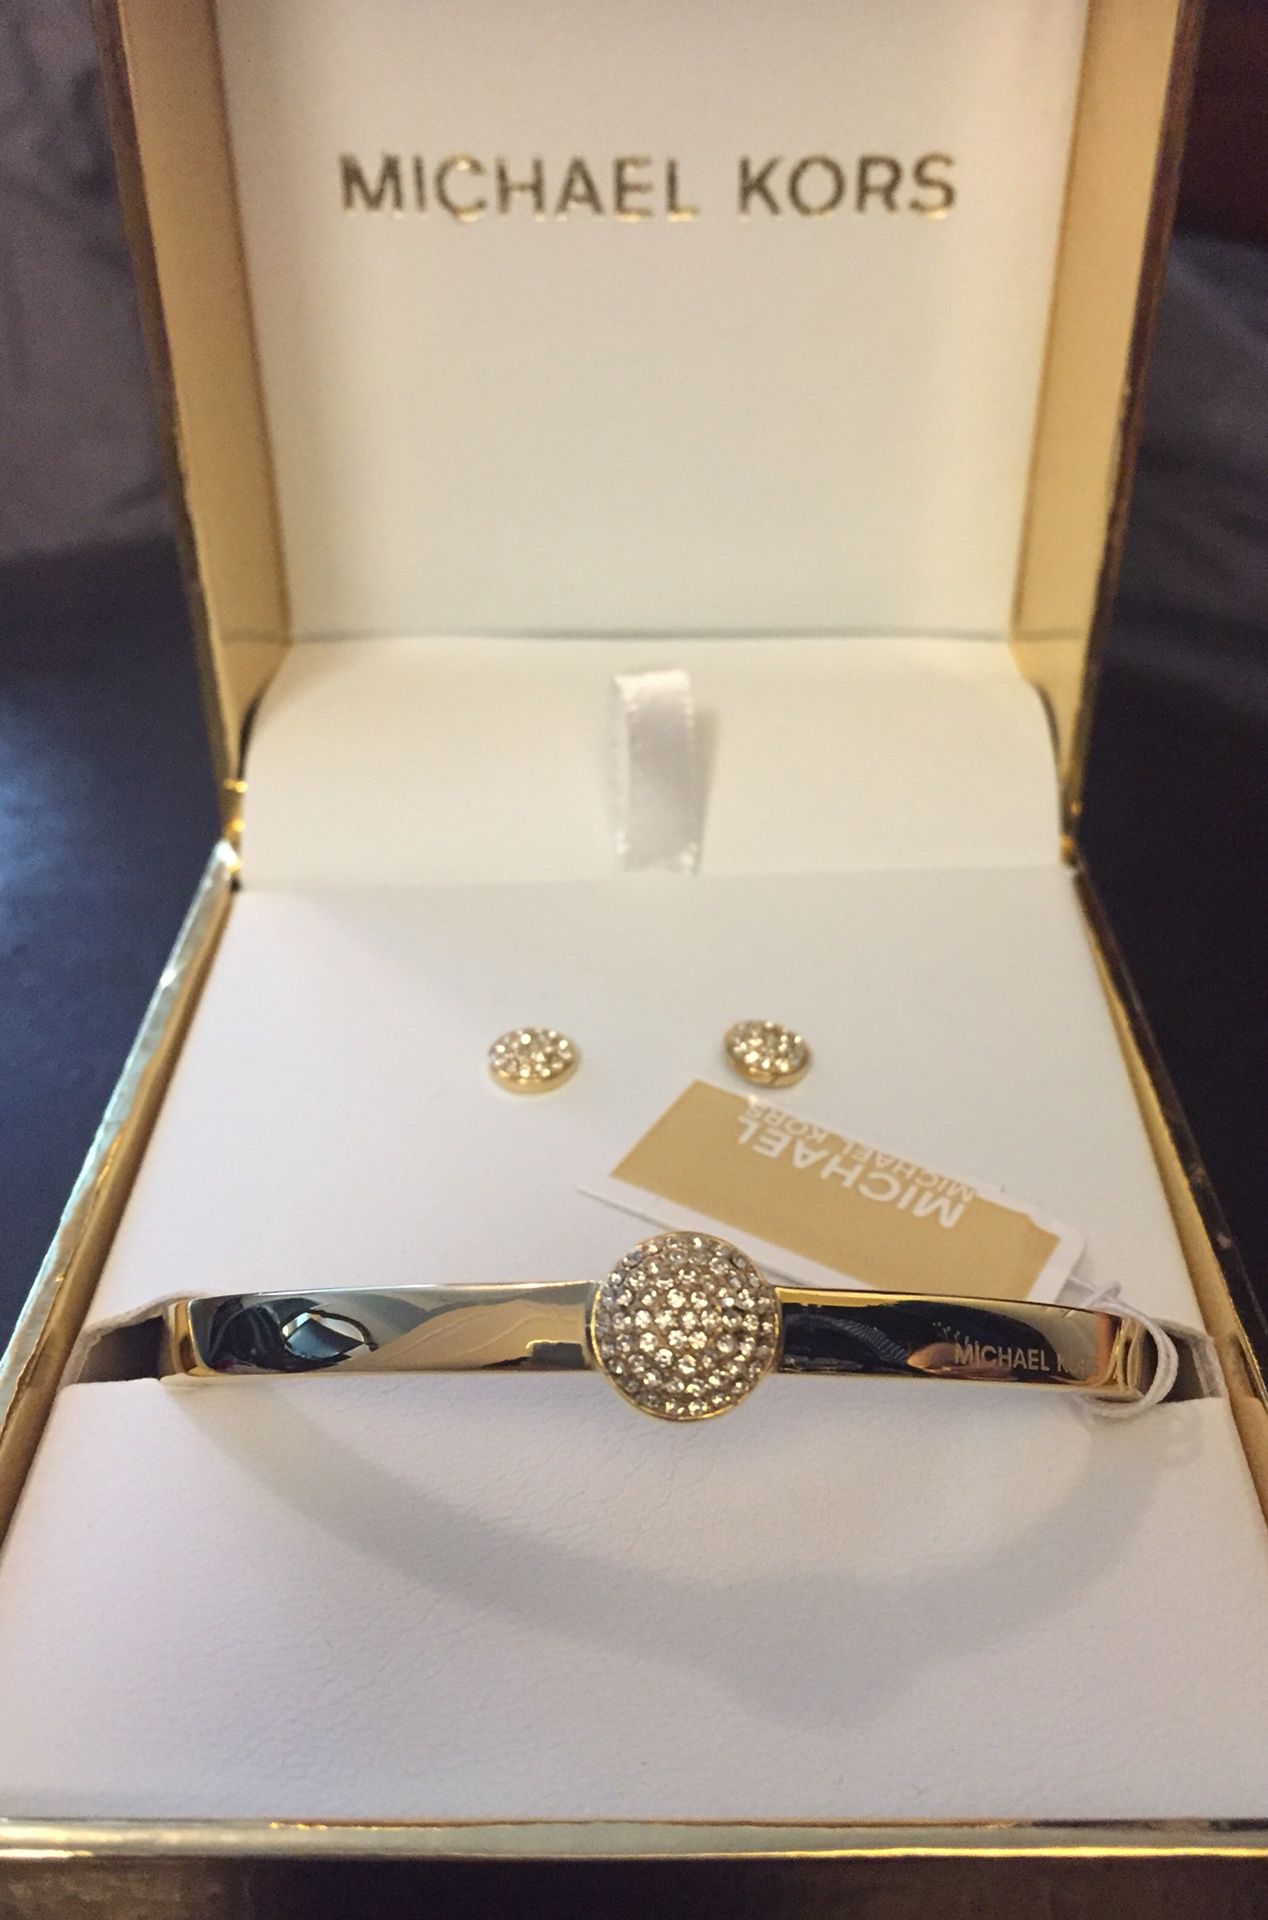 MICHAEL KORS GIFT SET Gold Bangle Bracelet Earrings Crystals MKJ5934710 + BOX